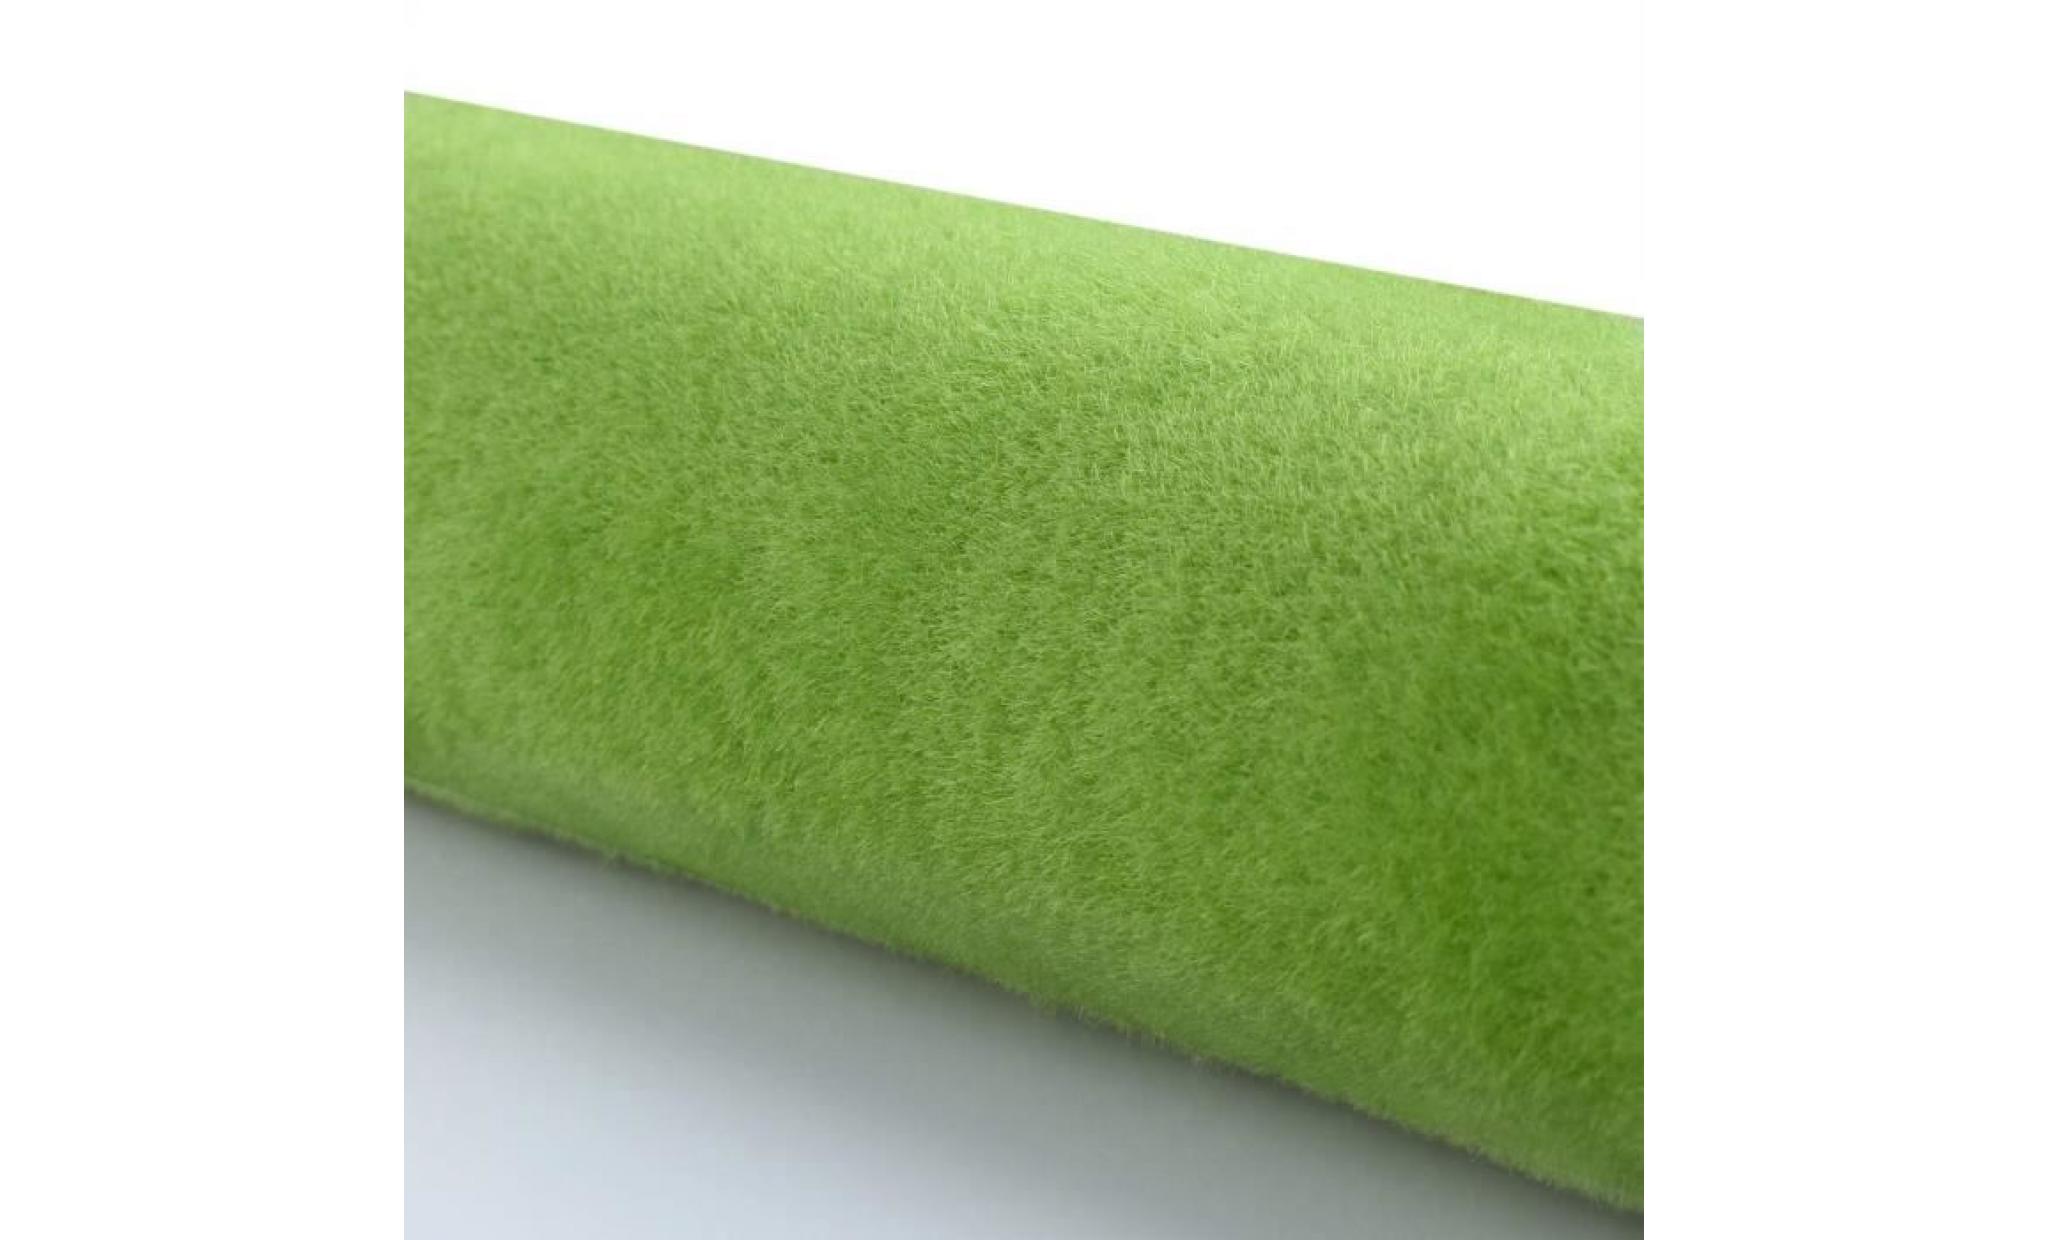 artificiel modèle tapis de gazon vert clair pelouse papier pour artisanat bricolage maison modèle paysage decorati lcpne pas cher